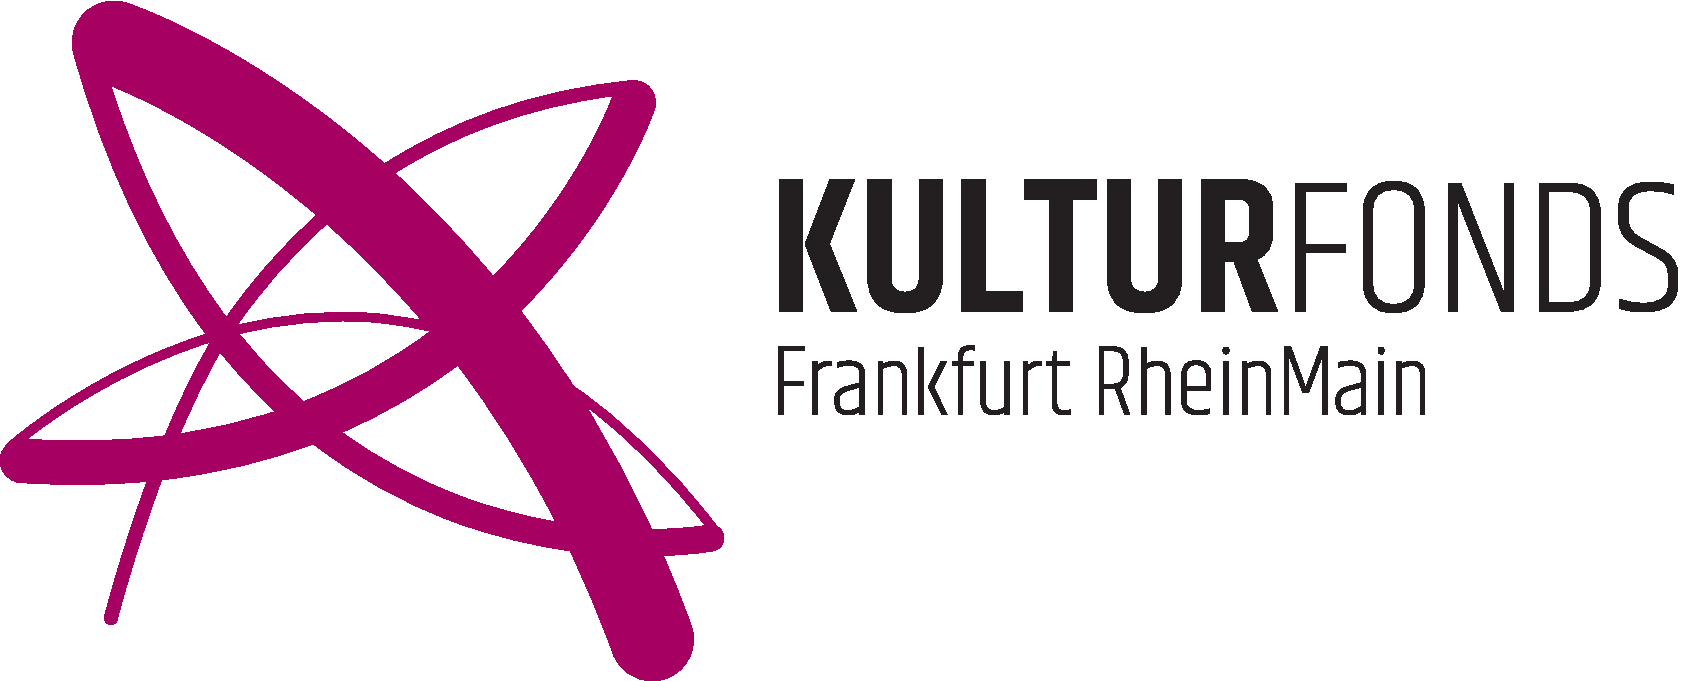 KFFRM logo violett basic